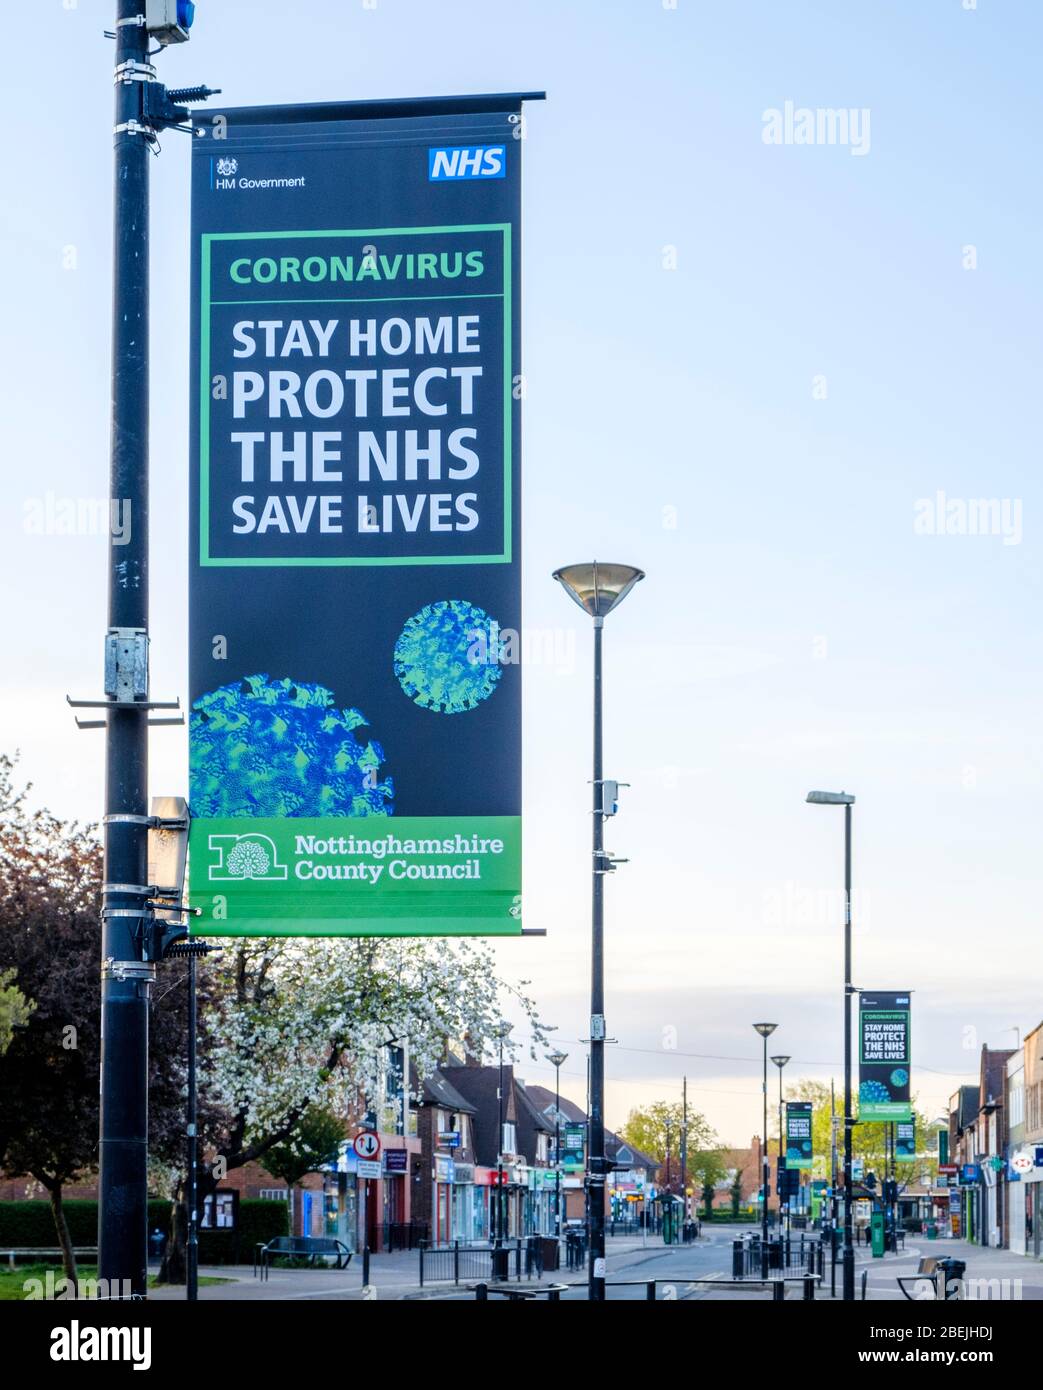 Restez à la maison. Protéger le NHS. Sauver des vies. Message de verrouillage en cas de pandémie de coronavirus dans une rue vide, West Bridgford, Notinghamshire, Angleterre, Royaume-Uni Banque D'Images